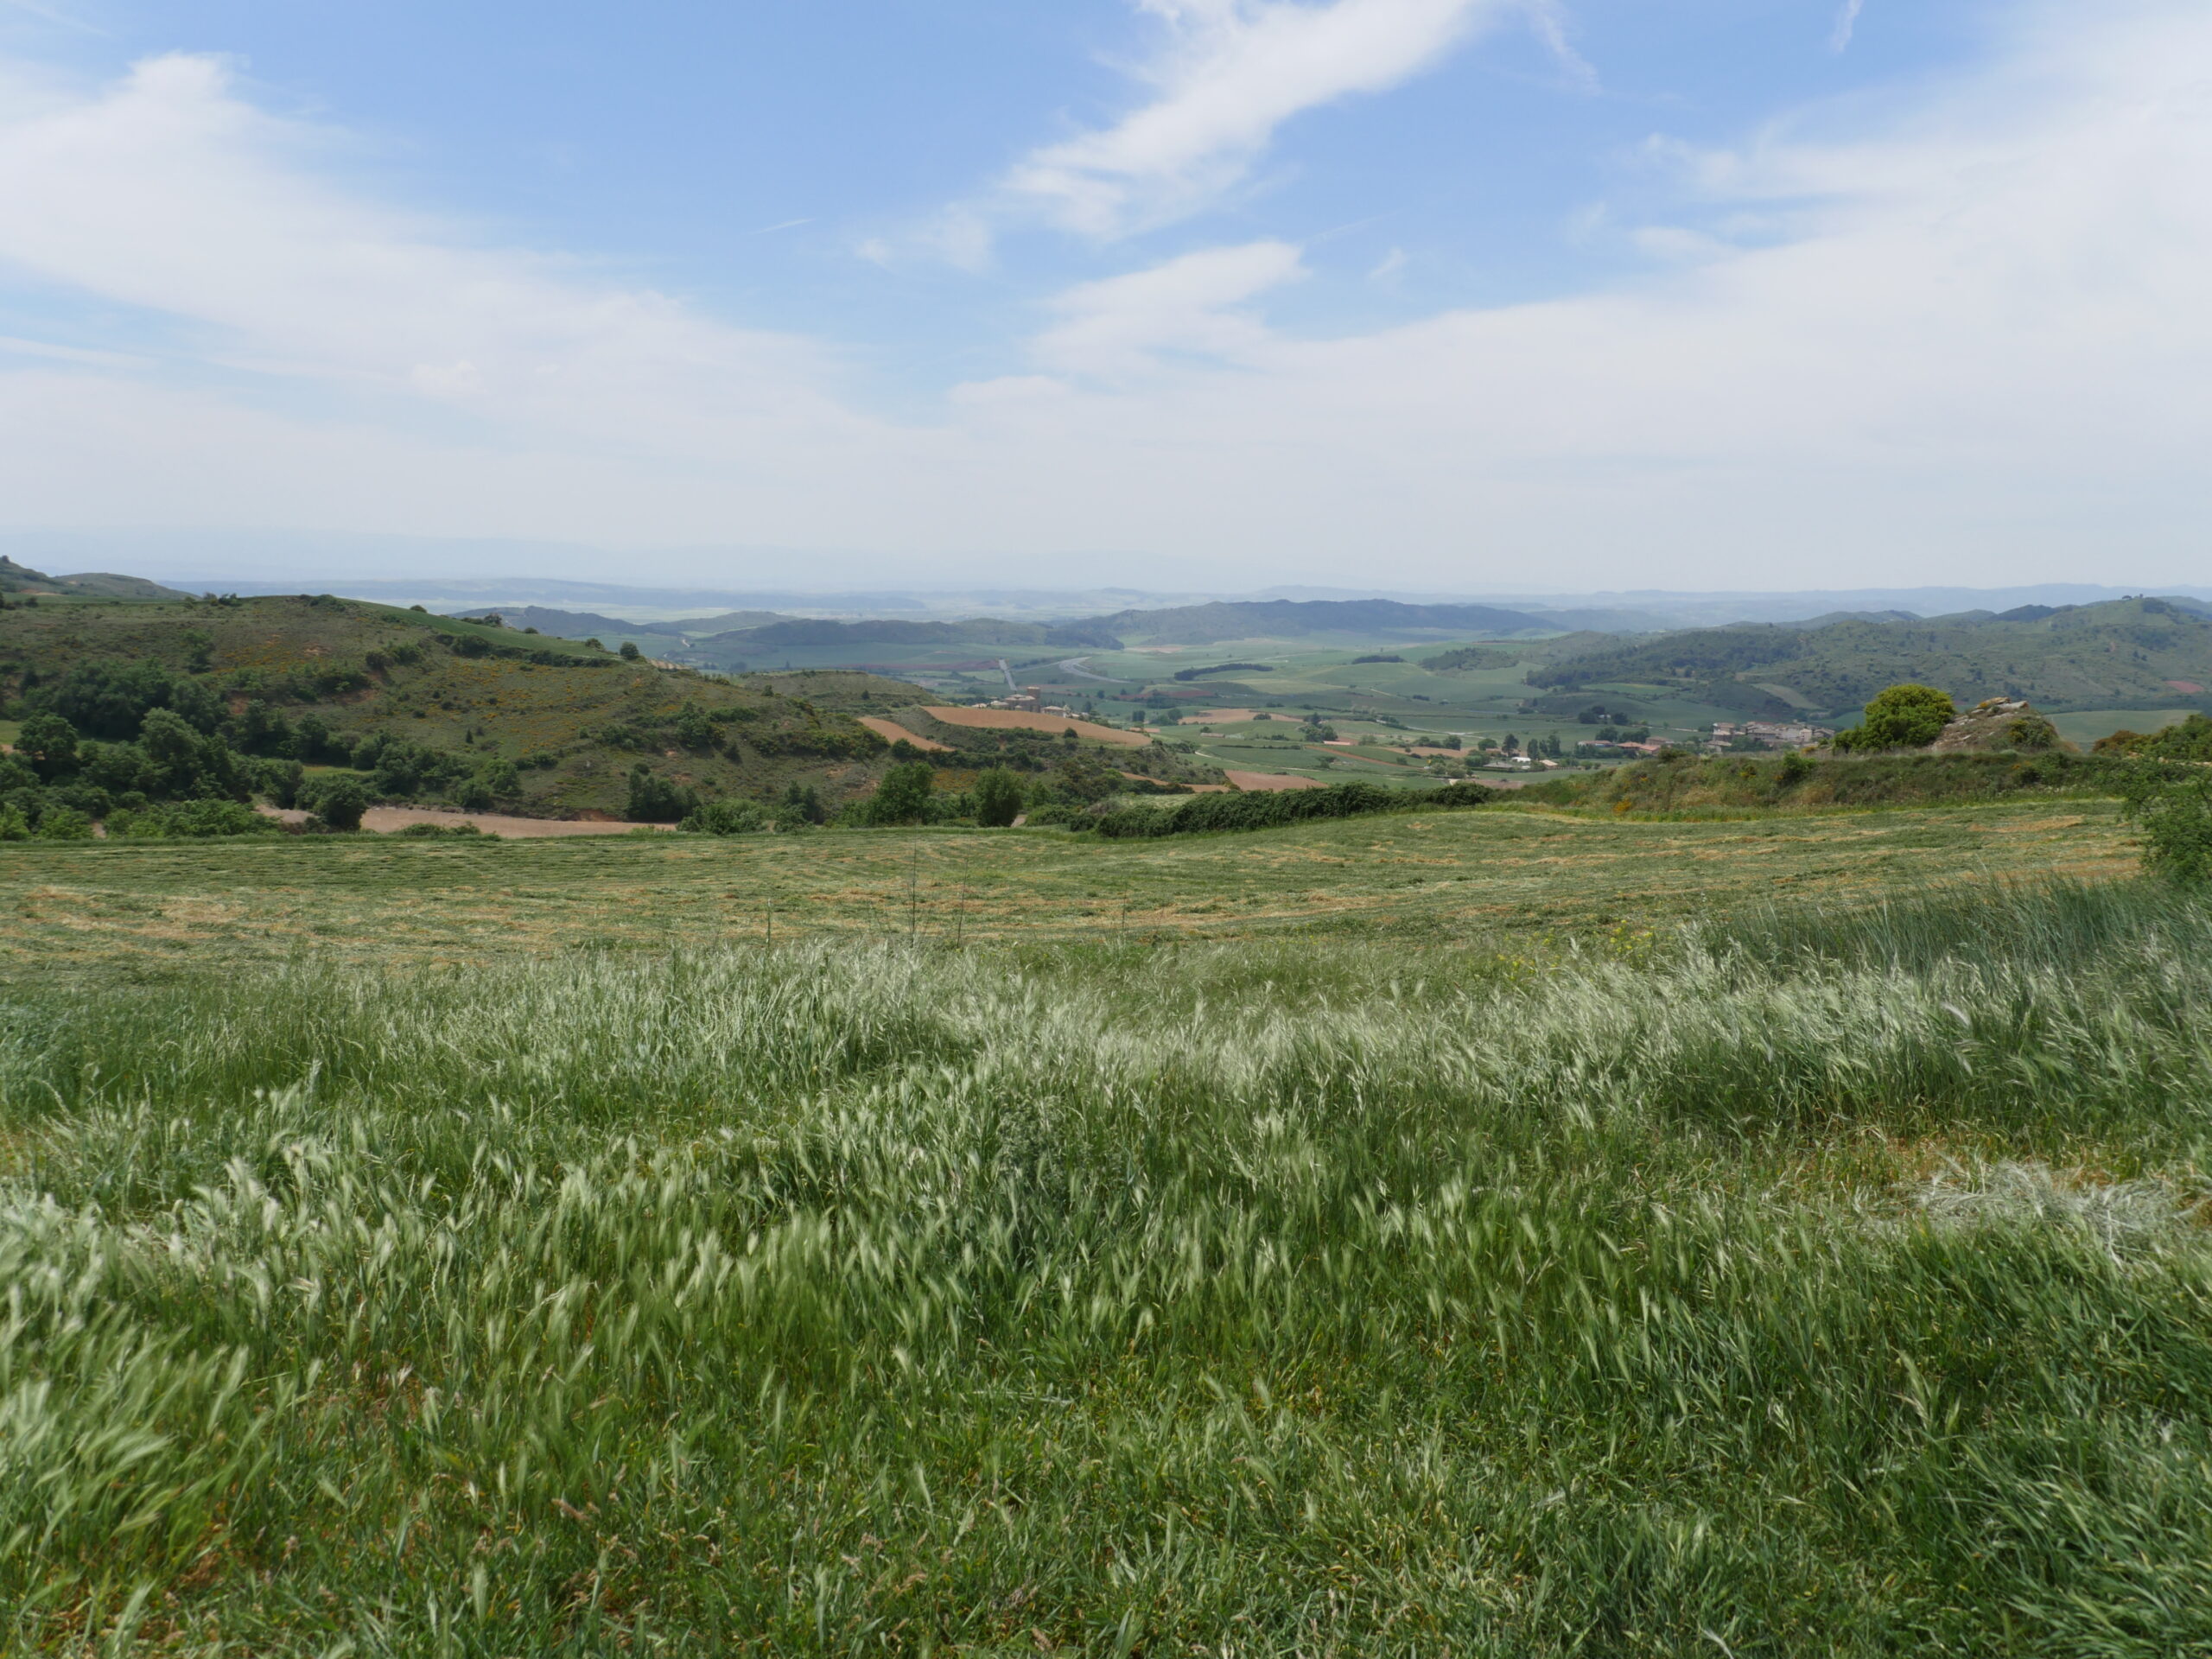 An ocean of barley surrounds the Camino de Santiago near Viana, Spain.